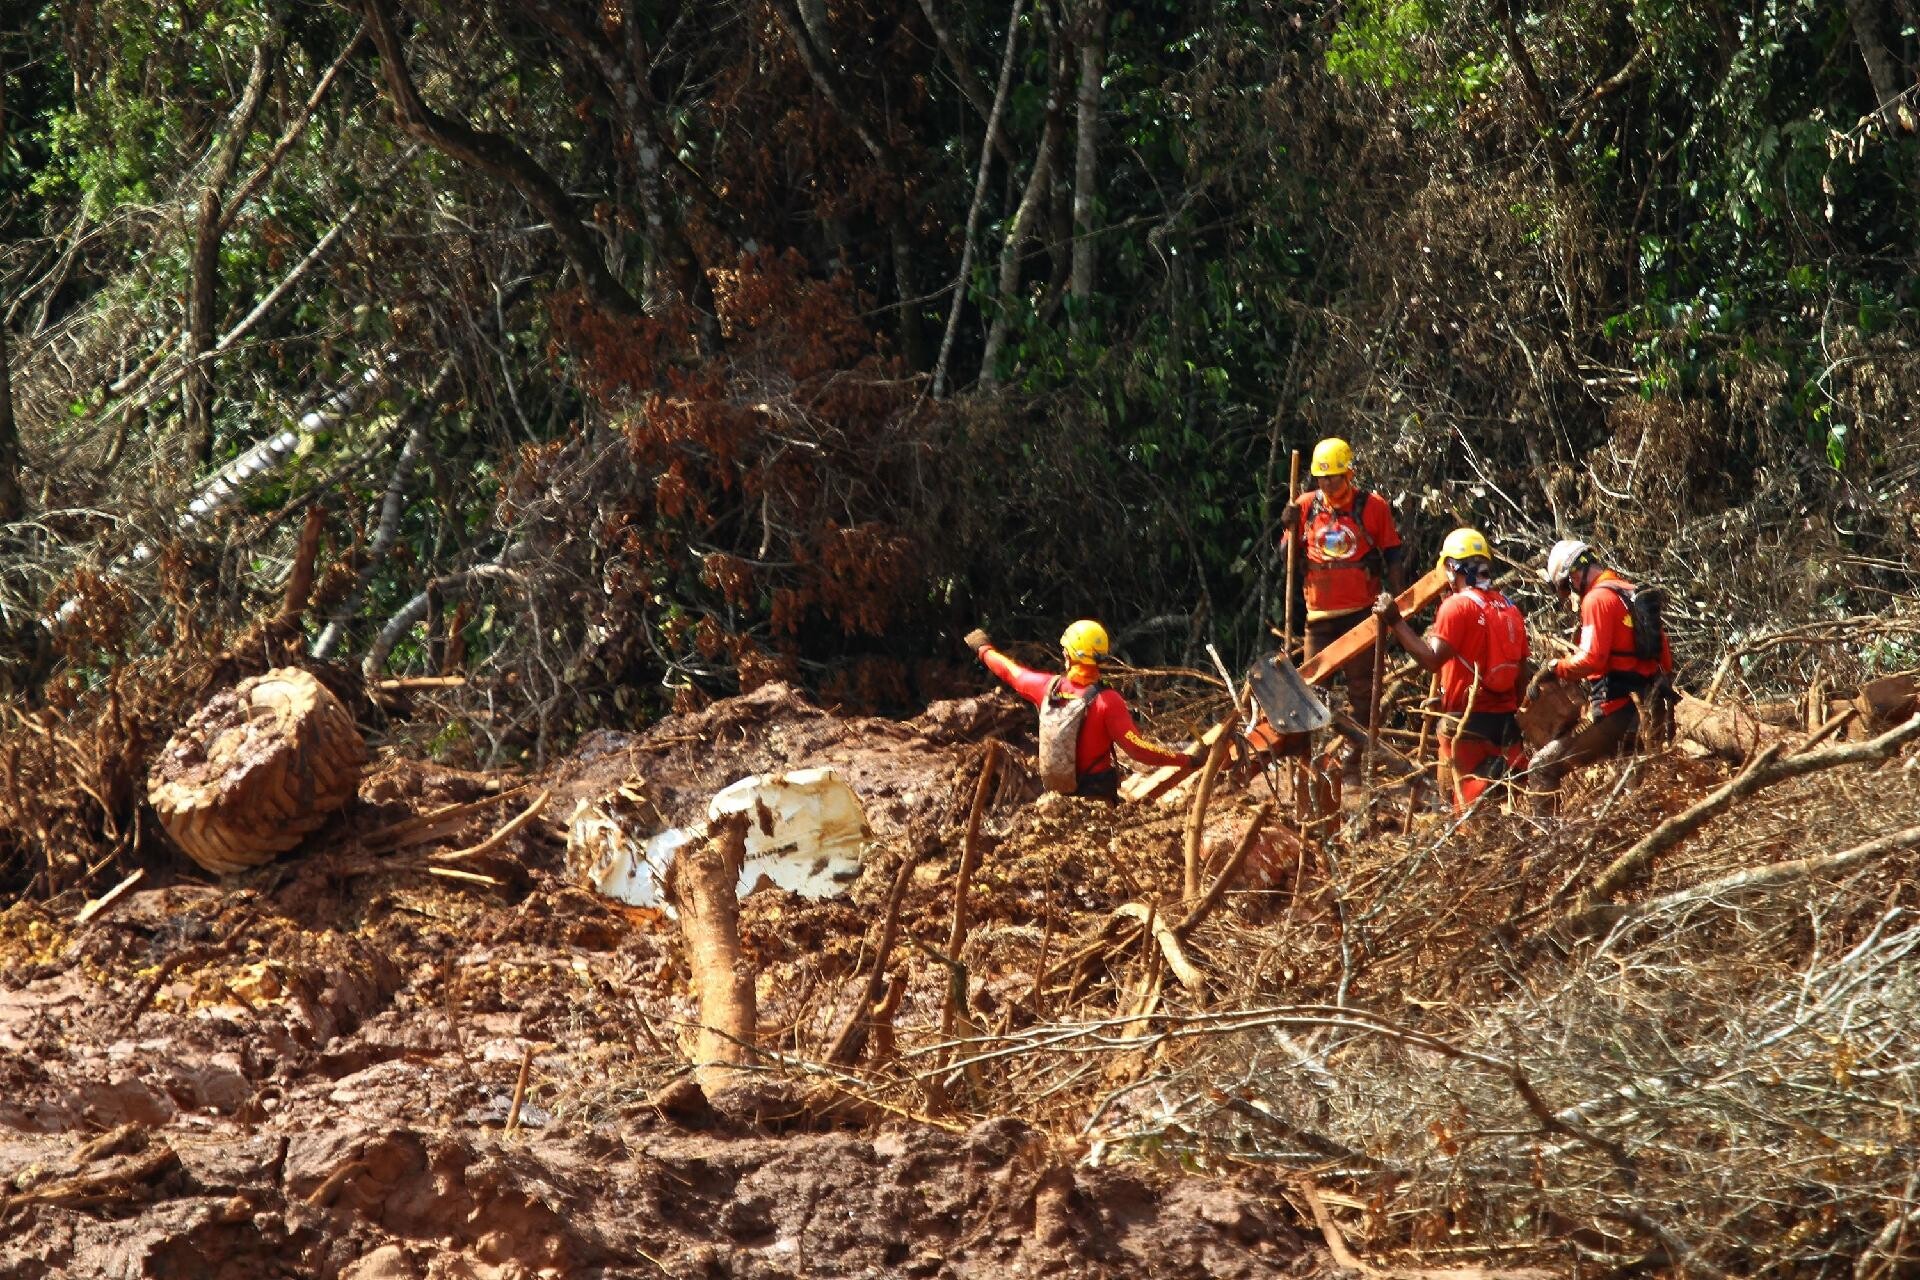 Equipes ainda buscam 160 desaparecidos em Brumadinho